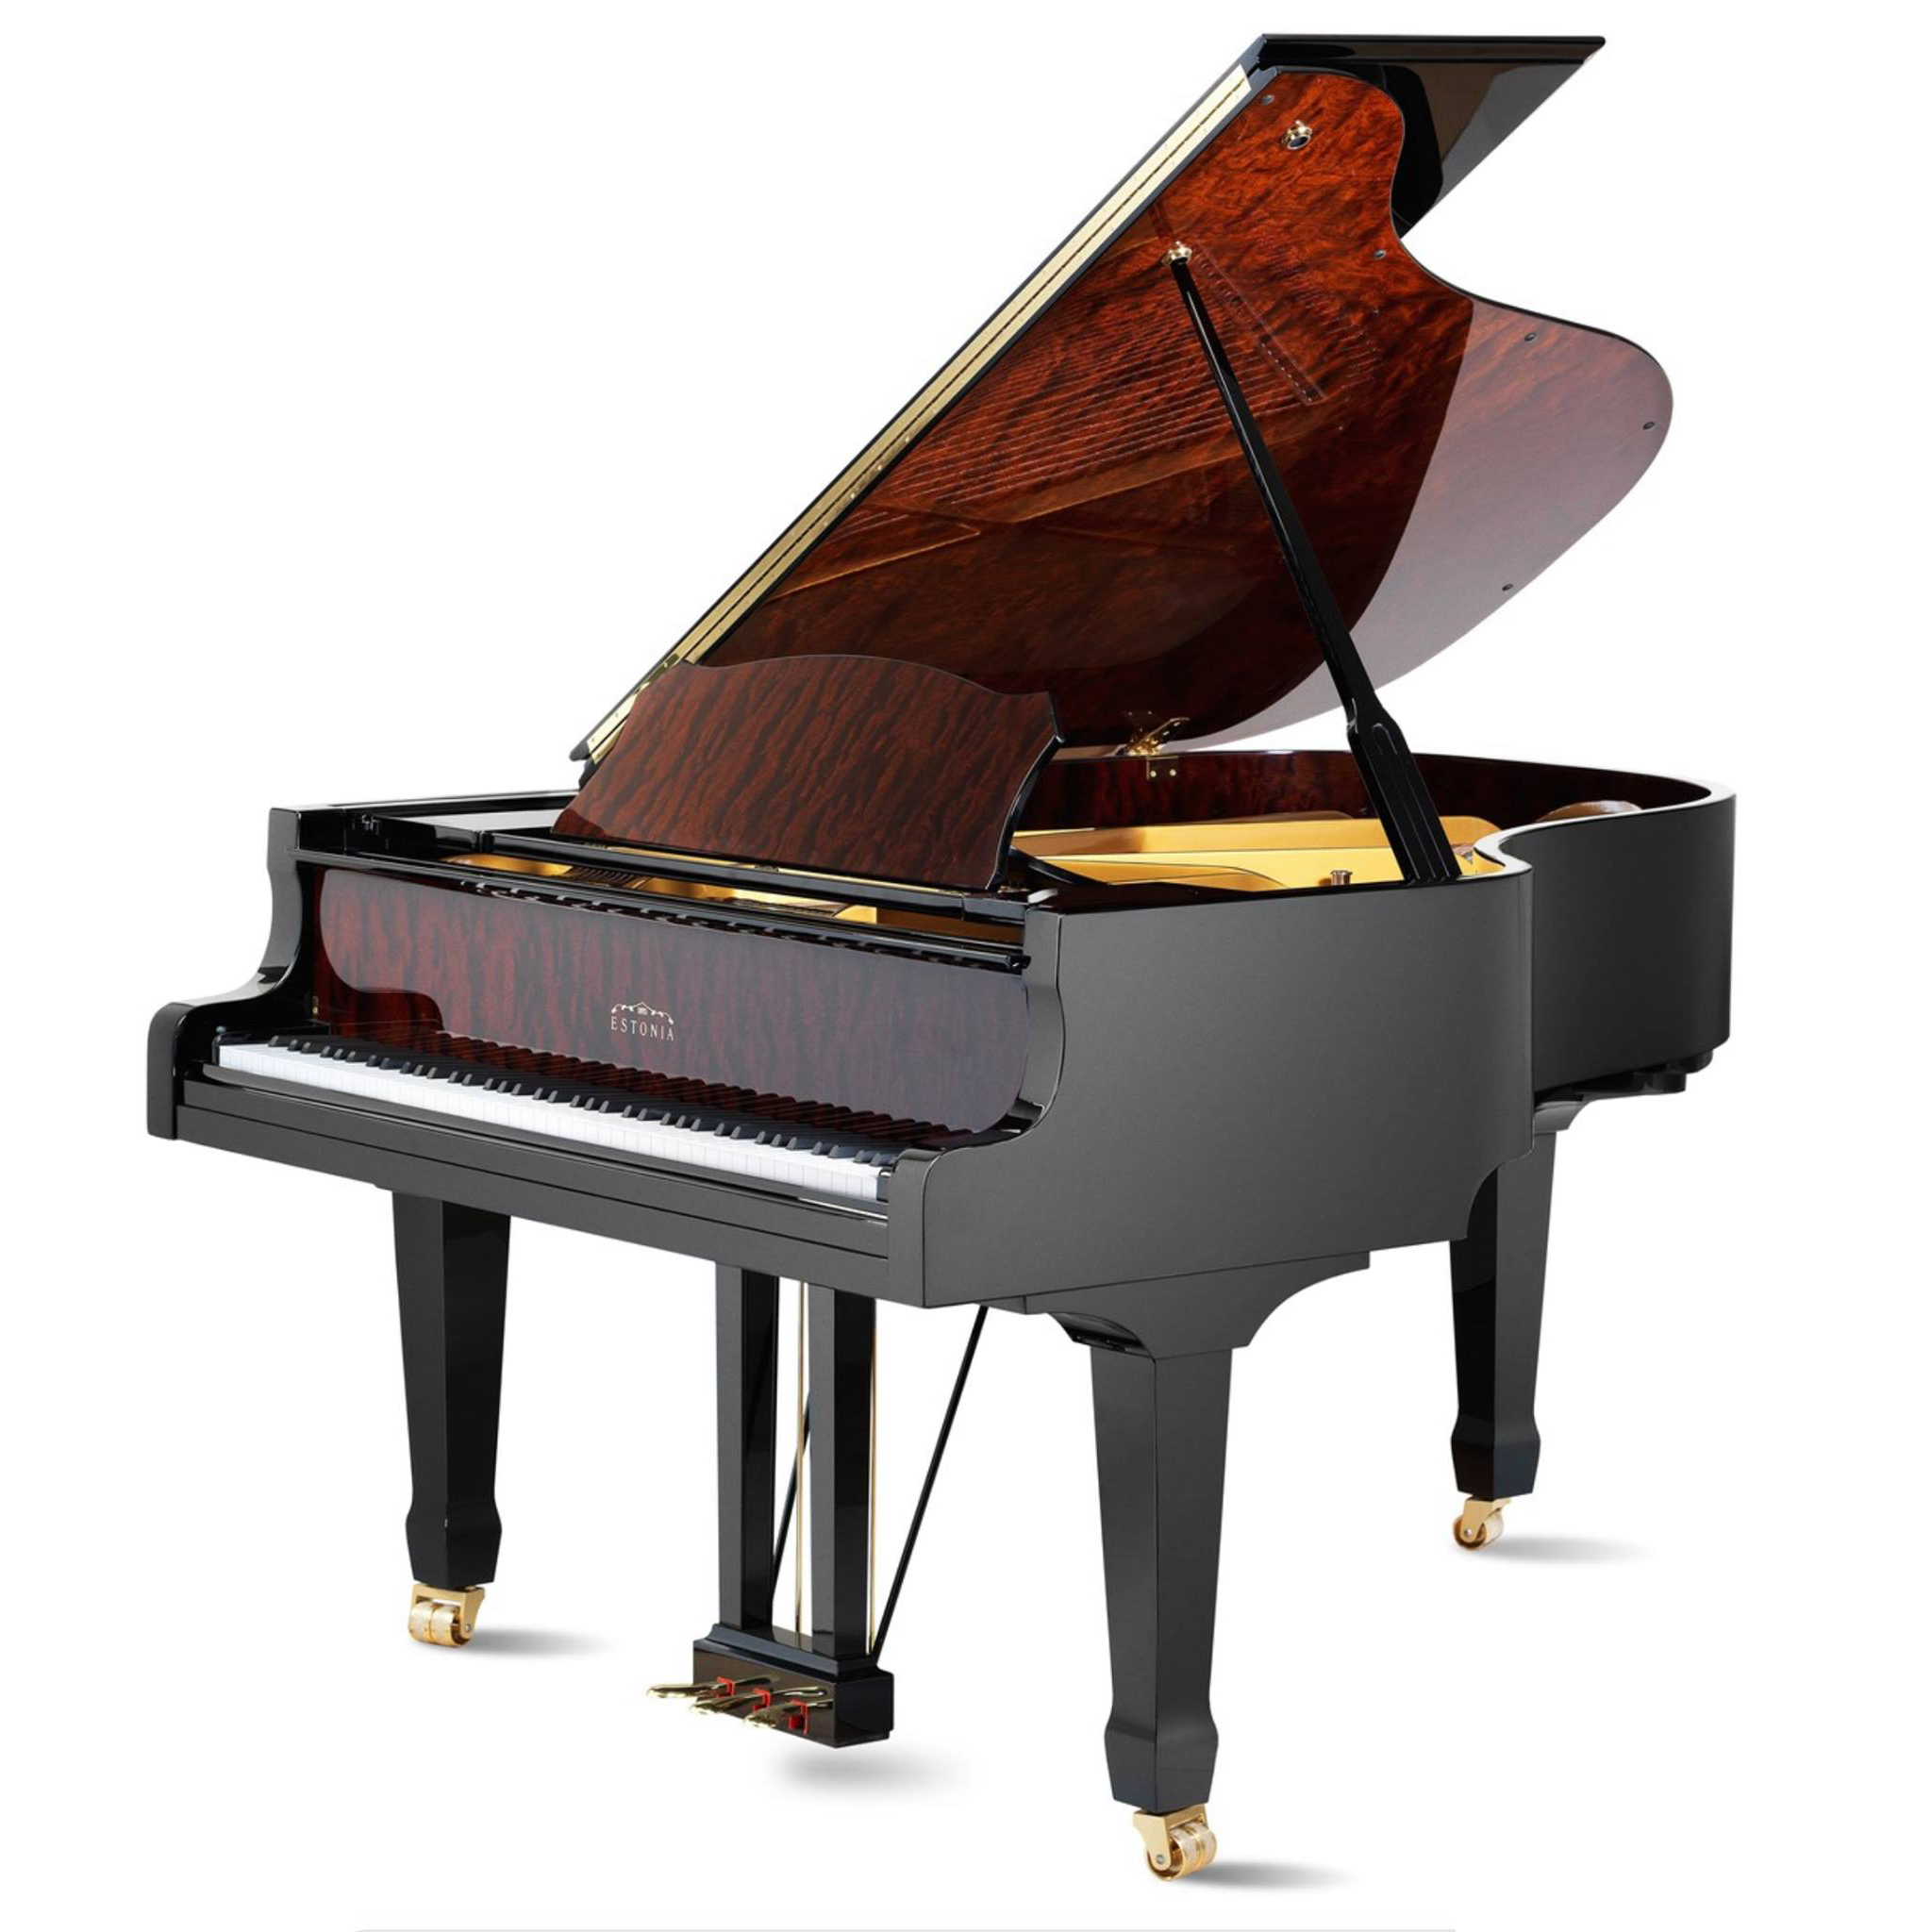 Estonia L168 5'6" Grand Piano - Hidden Beauty